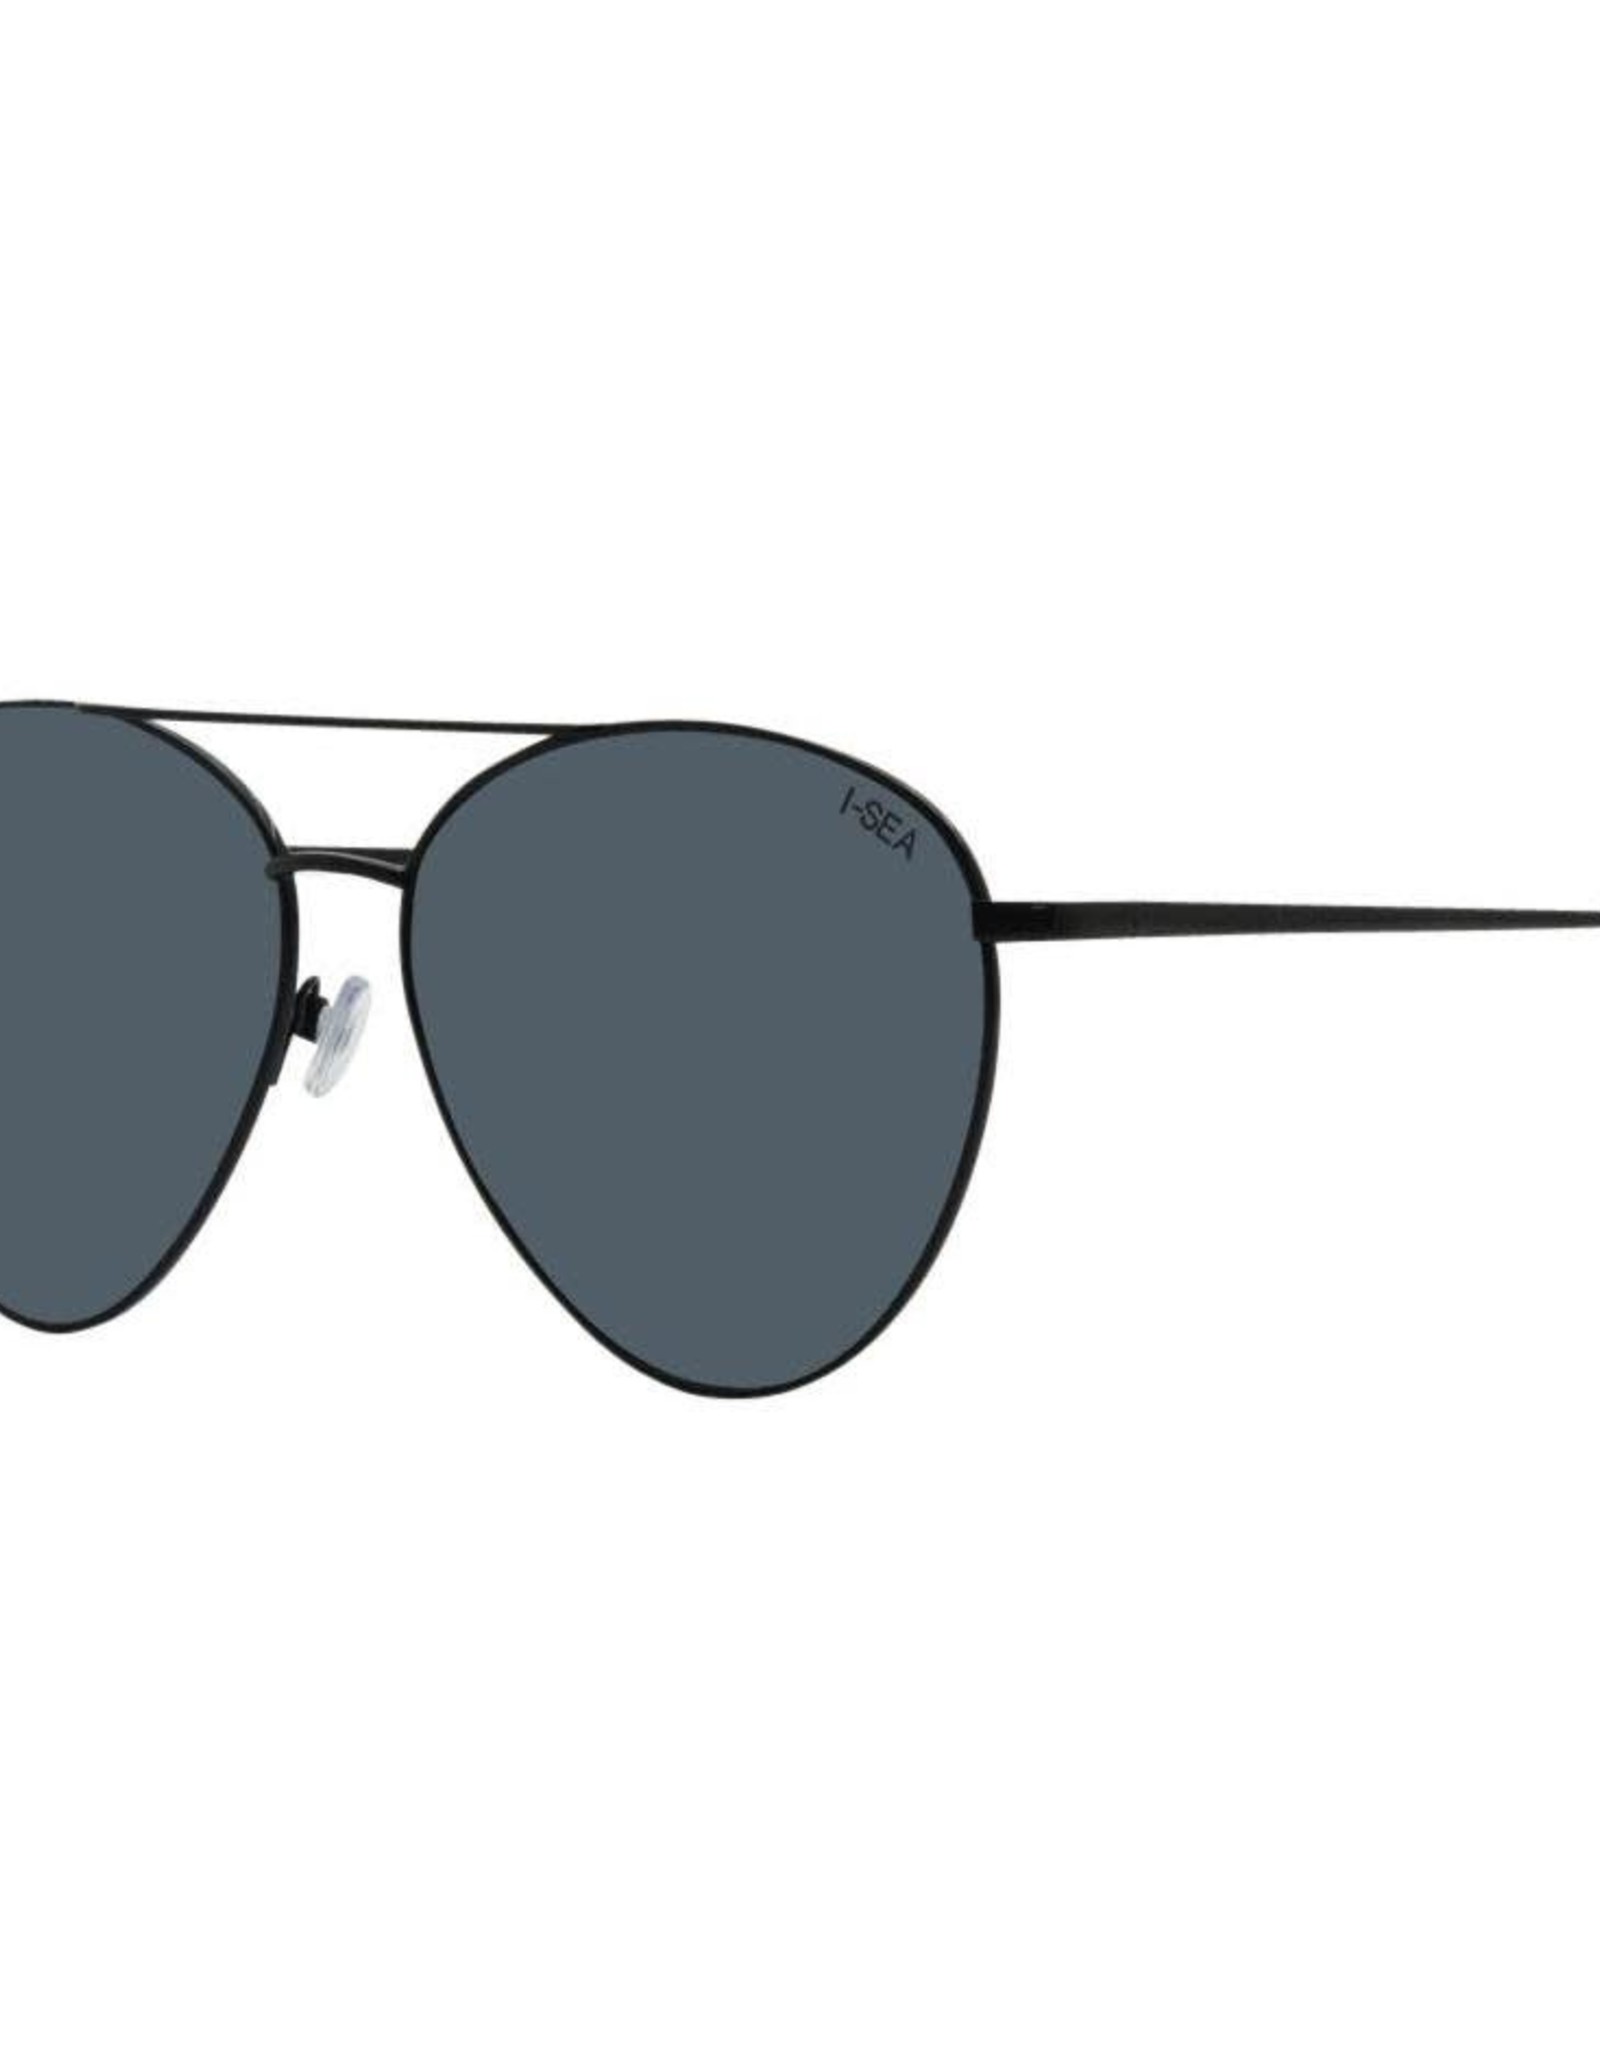 ISEA Charlie Sunglasses